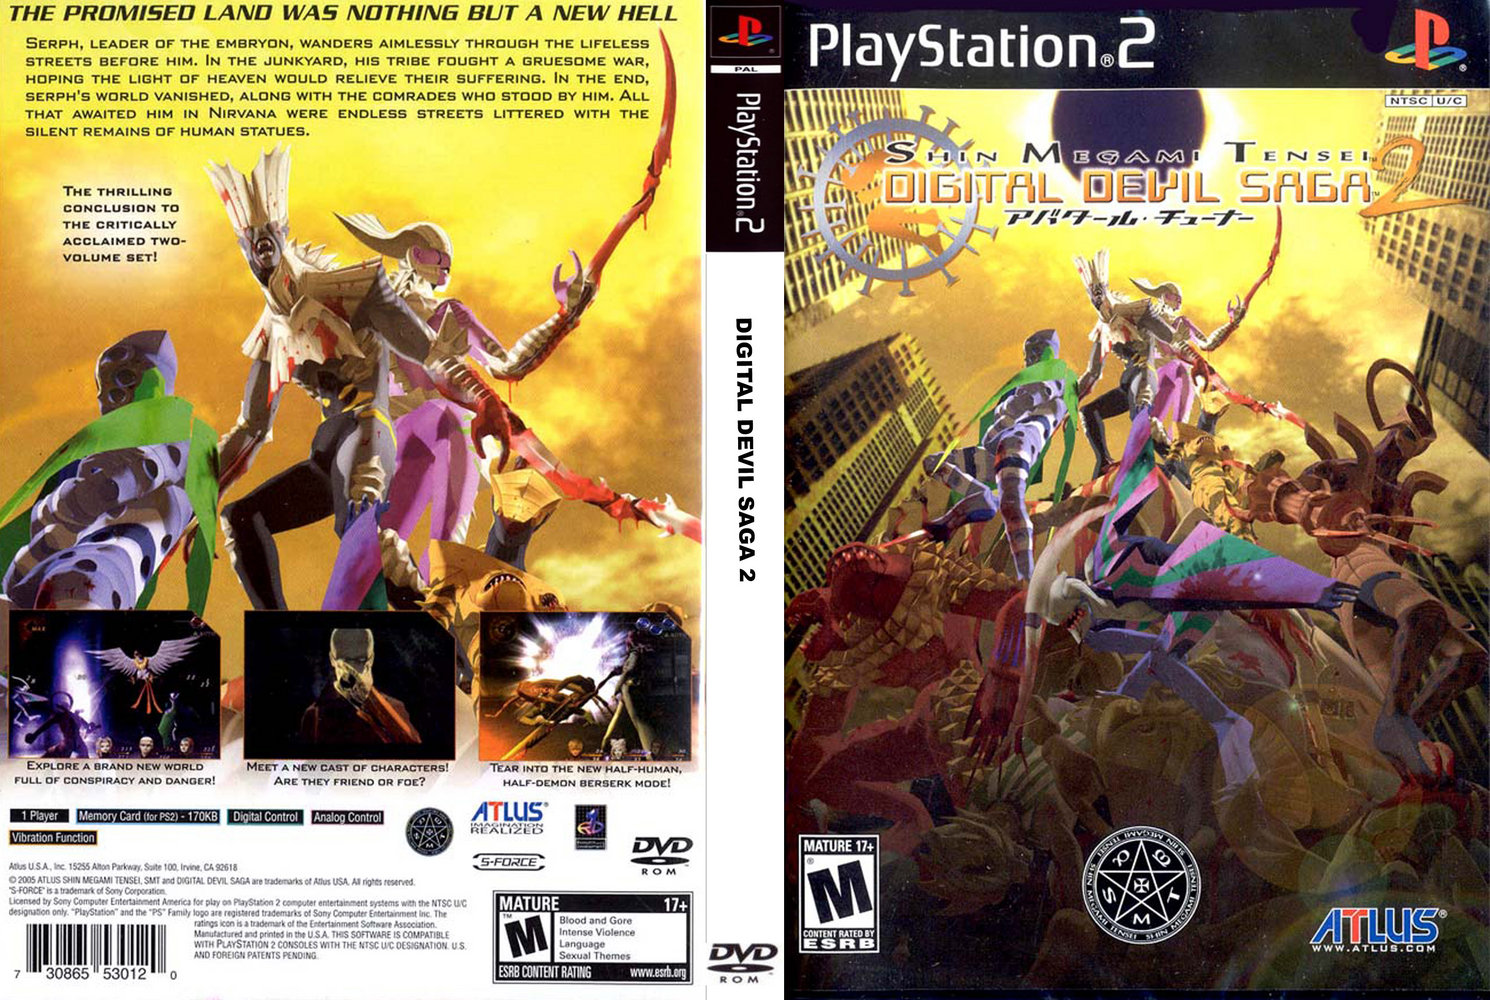 PS2《數碼惡魔傳說:天魔變2》美版封面